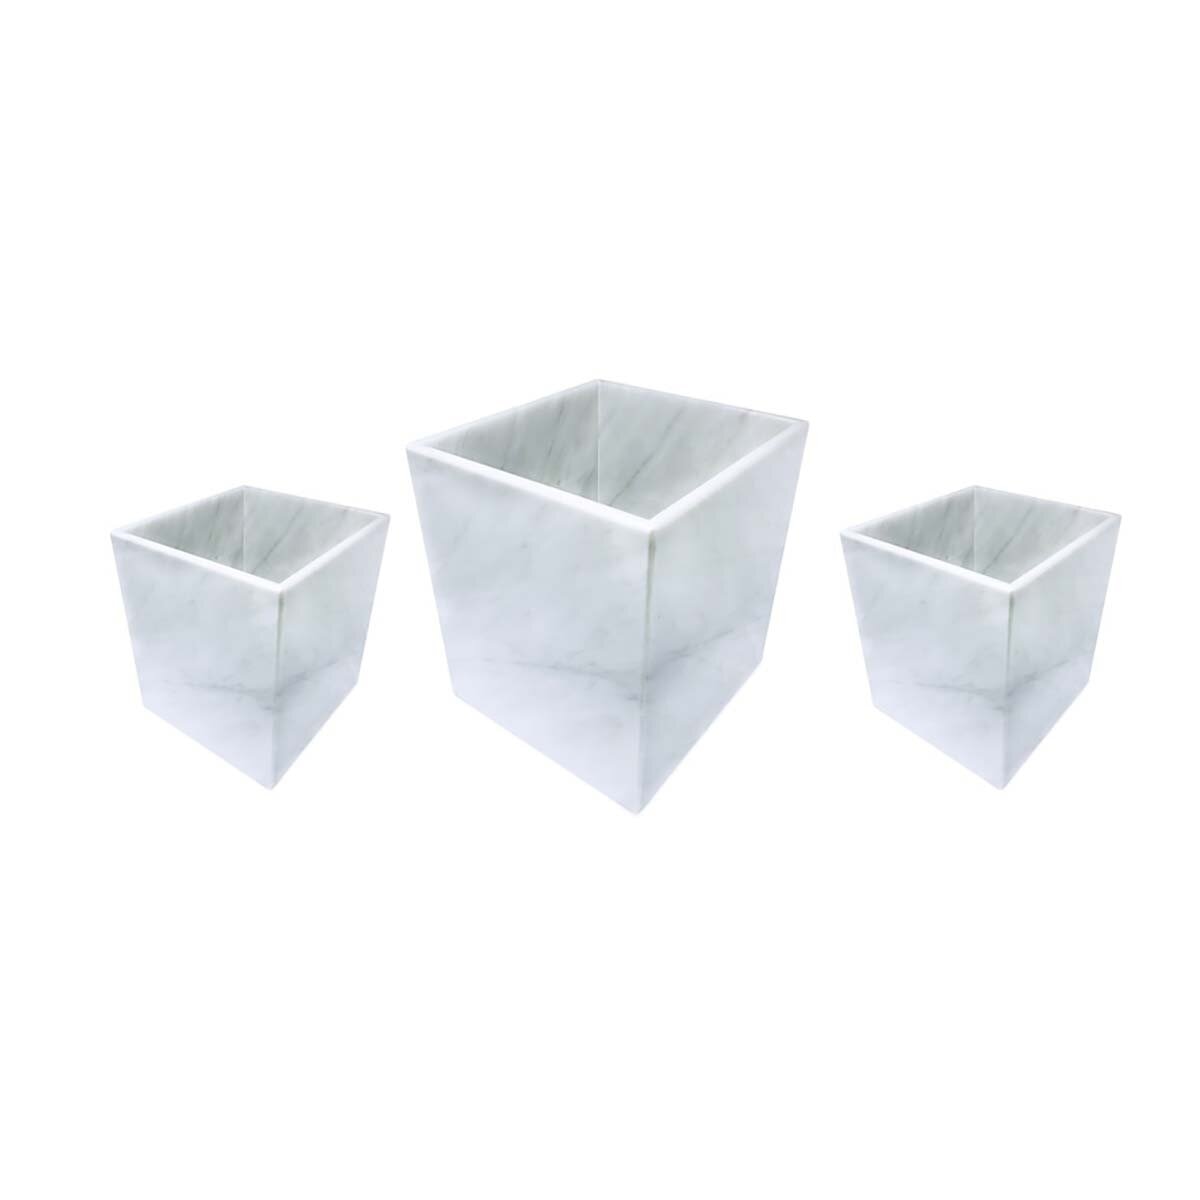 Luhom Juego de 3 Cubos Multiusos de Mármol Blanco